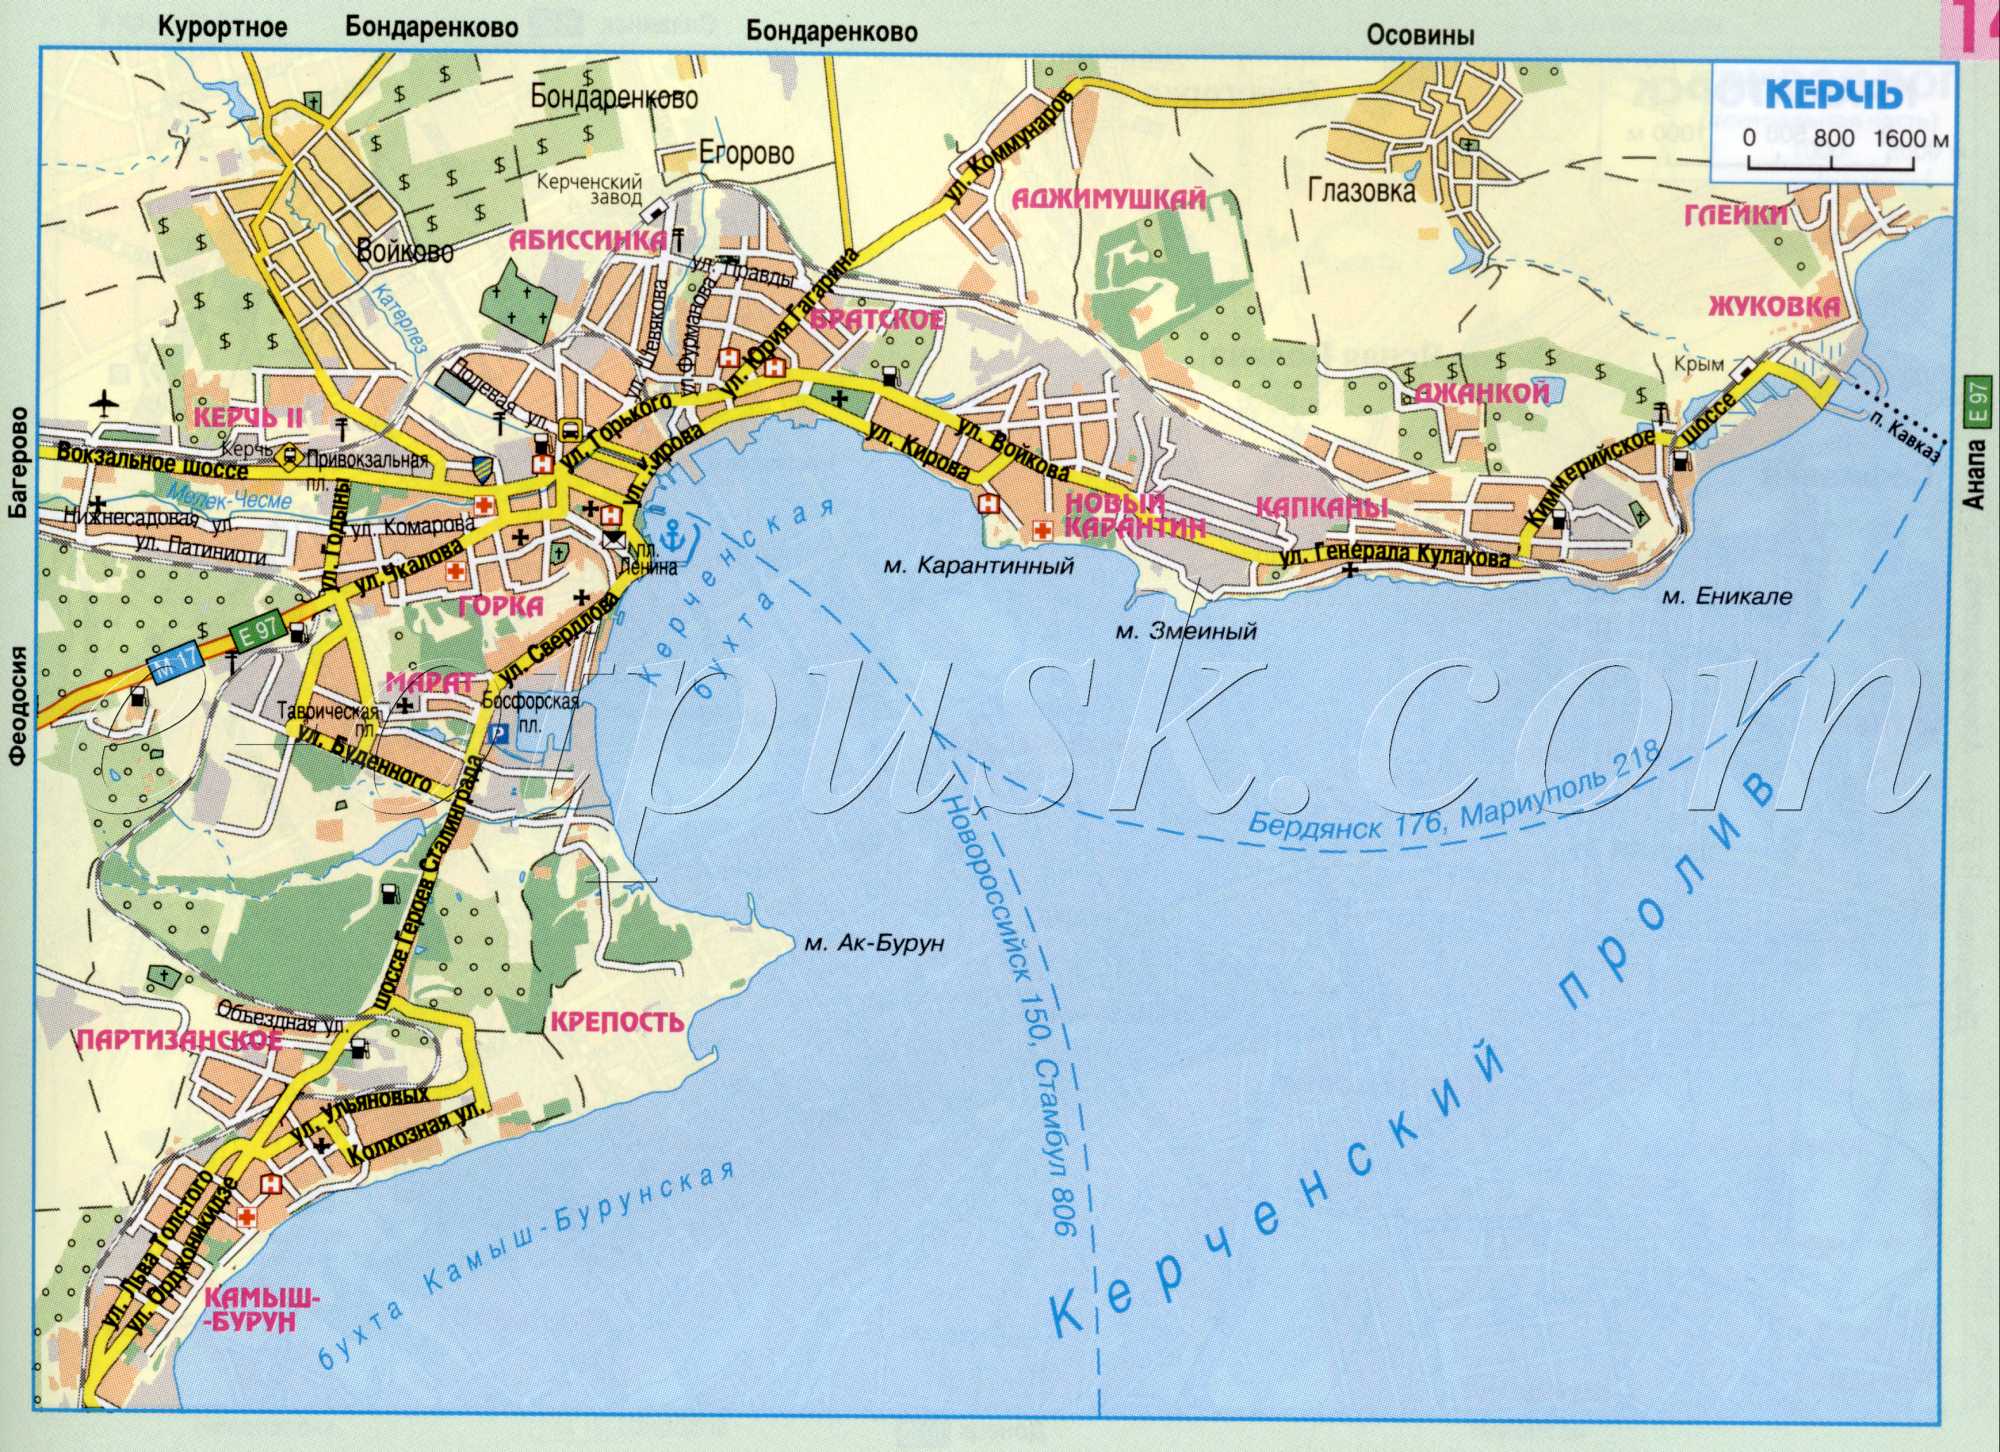 Карта Керчі. Автономна республіка Крим, схема проїзду через місто Керч. завантажити безкоштовно